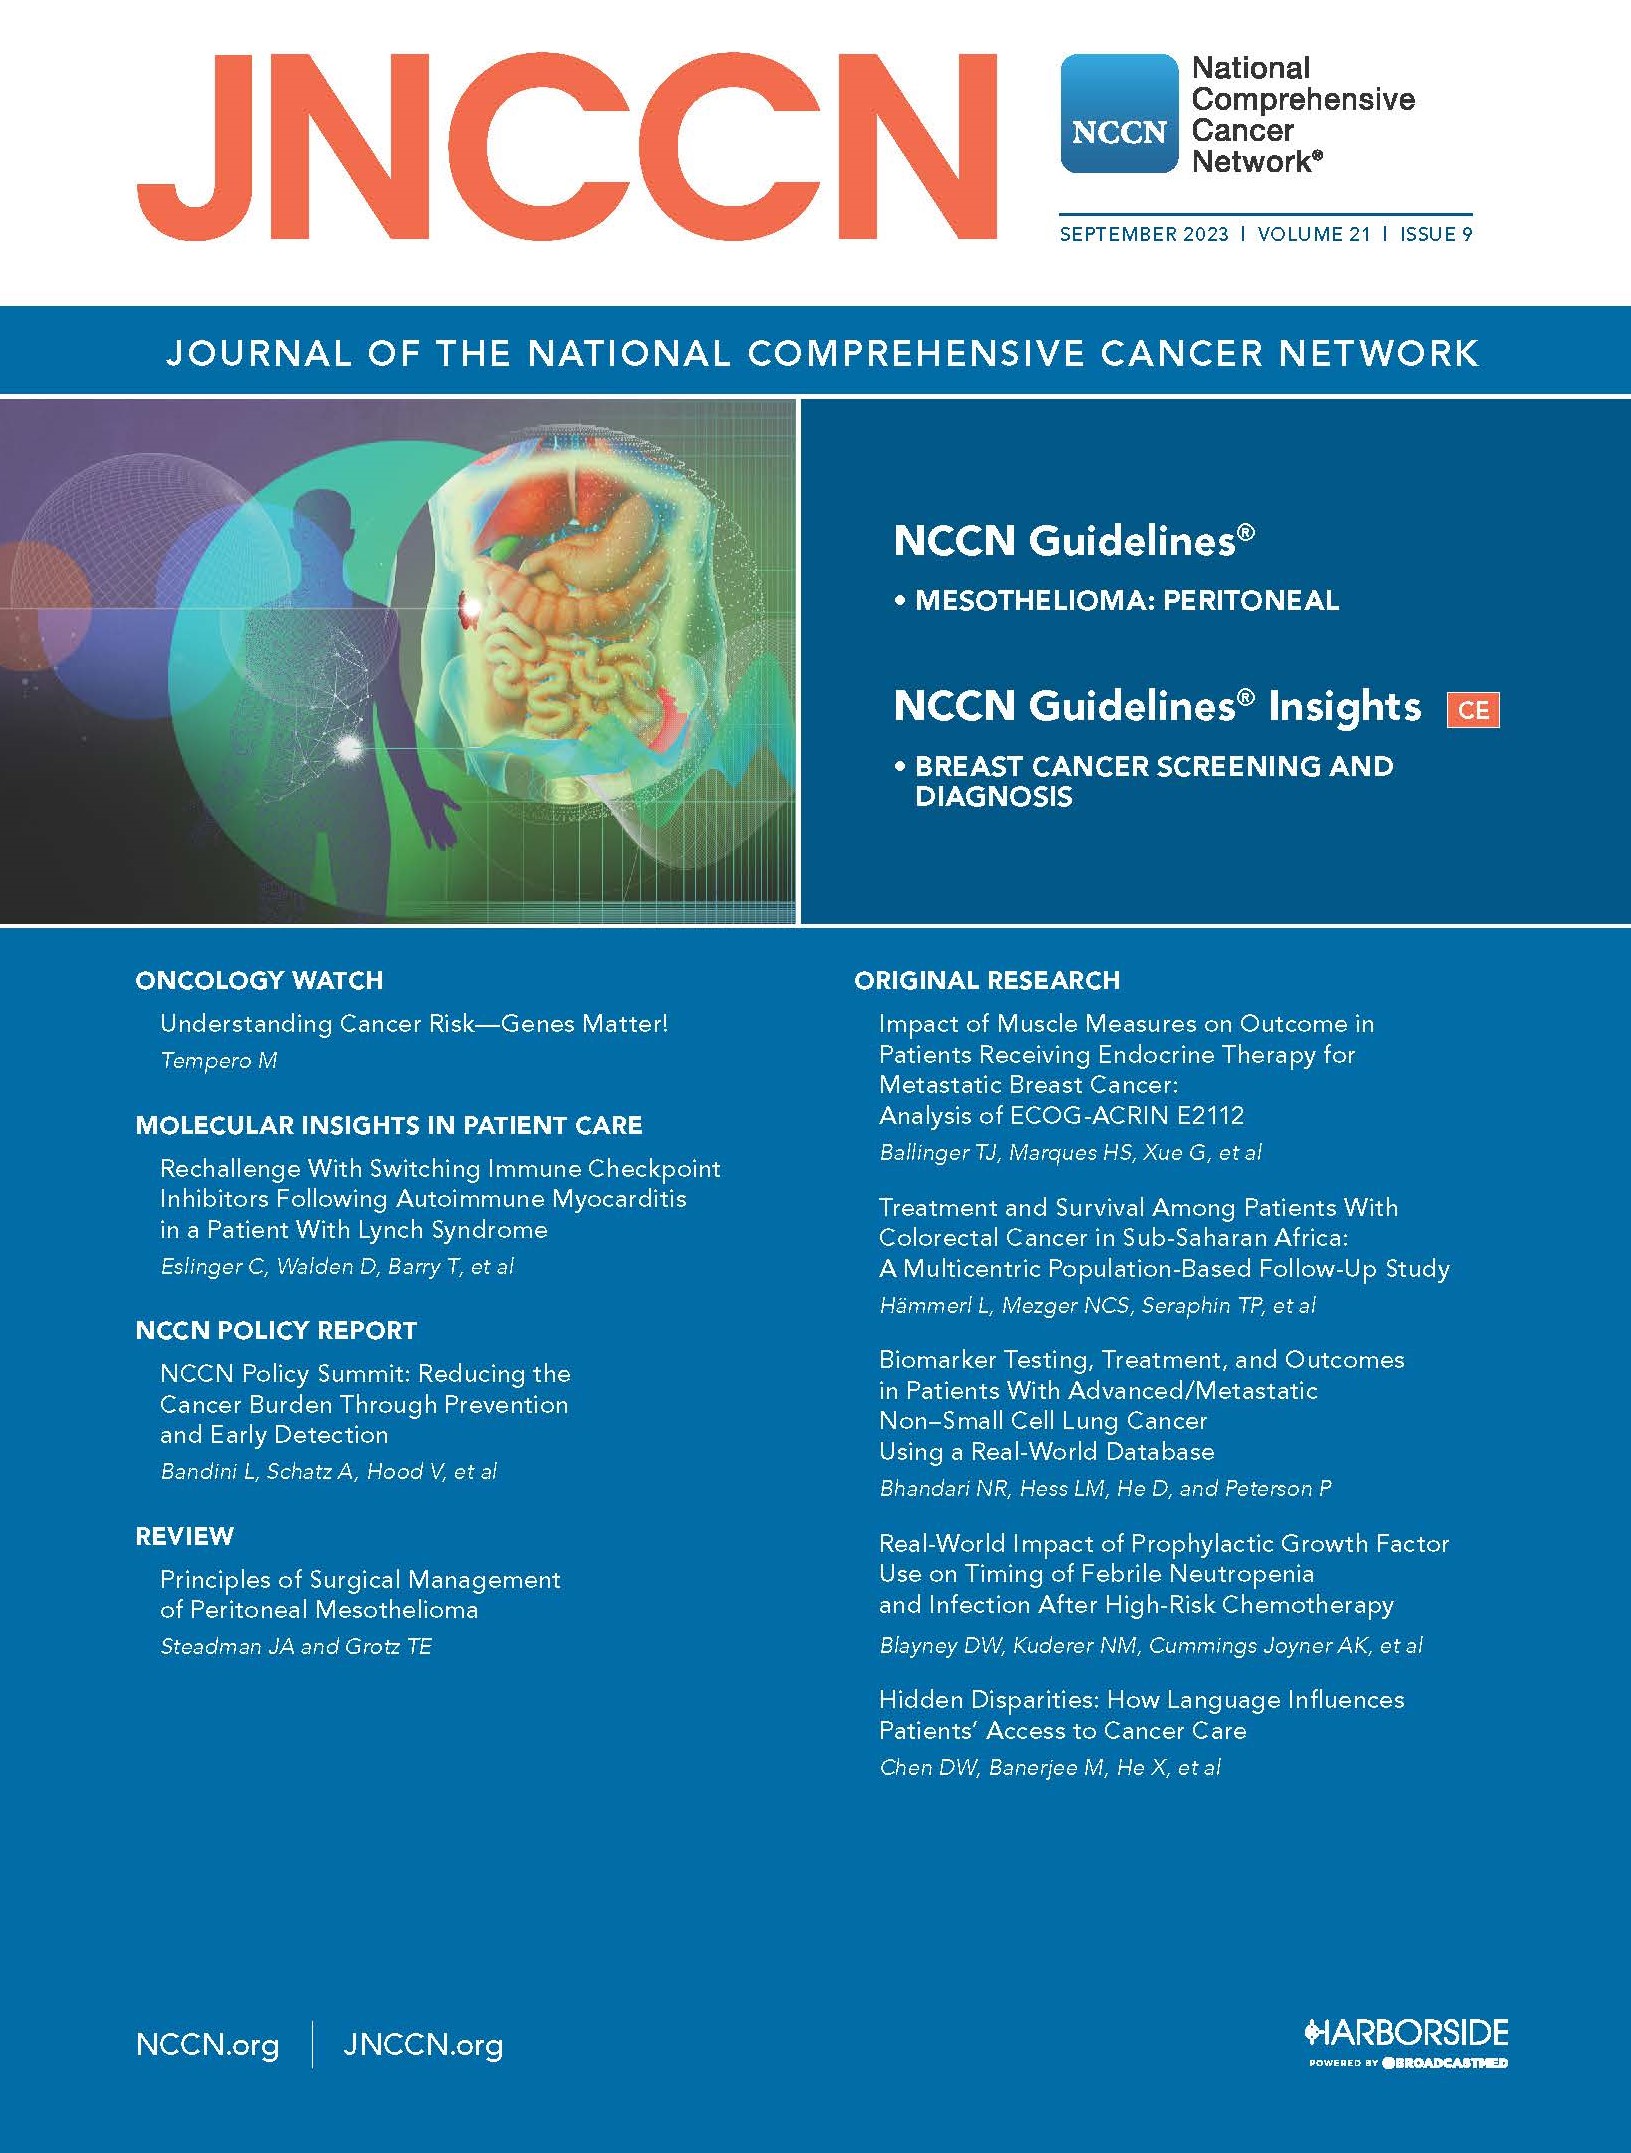 JNCCN Cover, September 2023